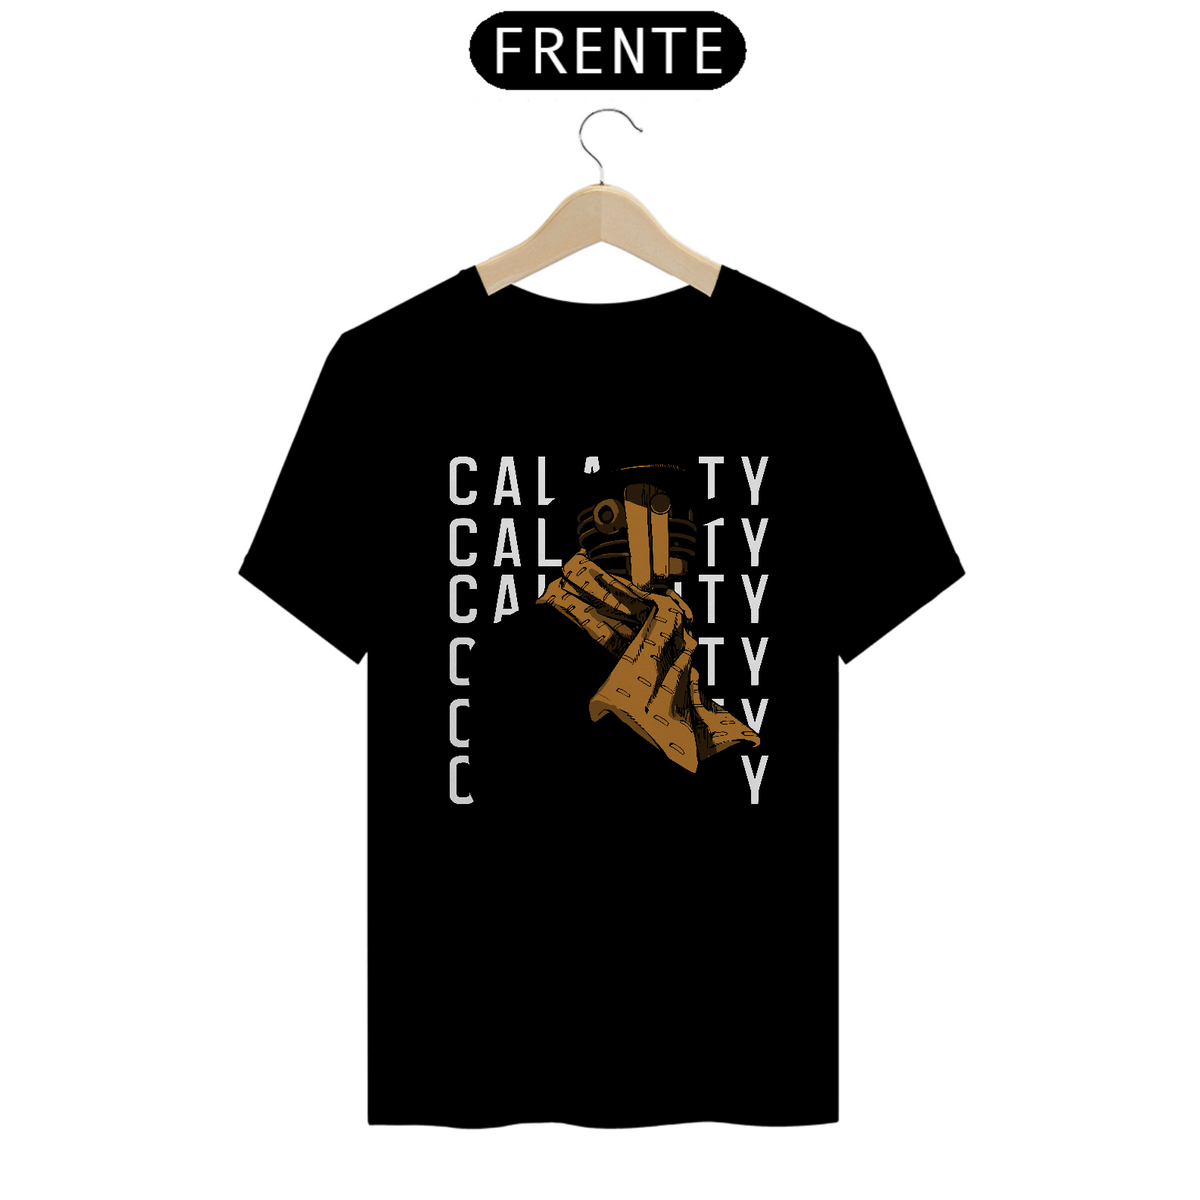 Nome do produto: Camiseta Calamity Frente